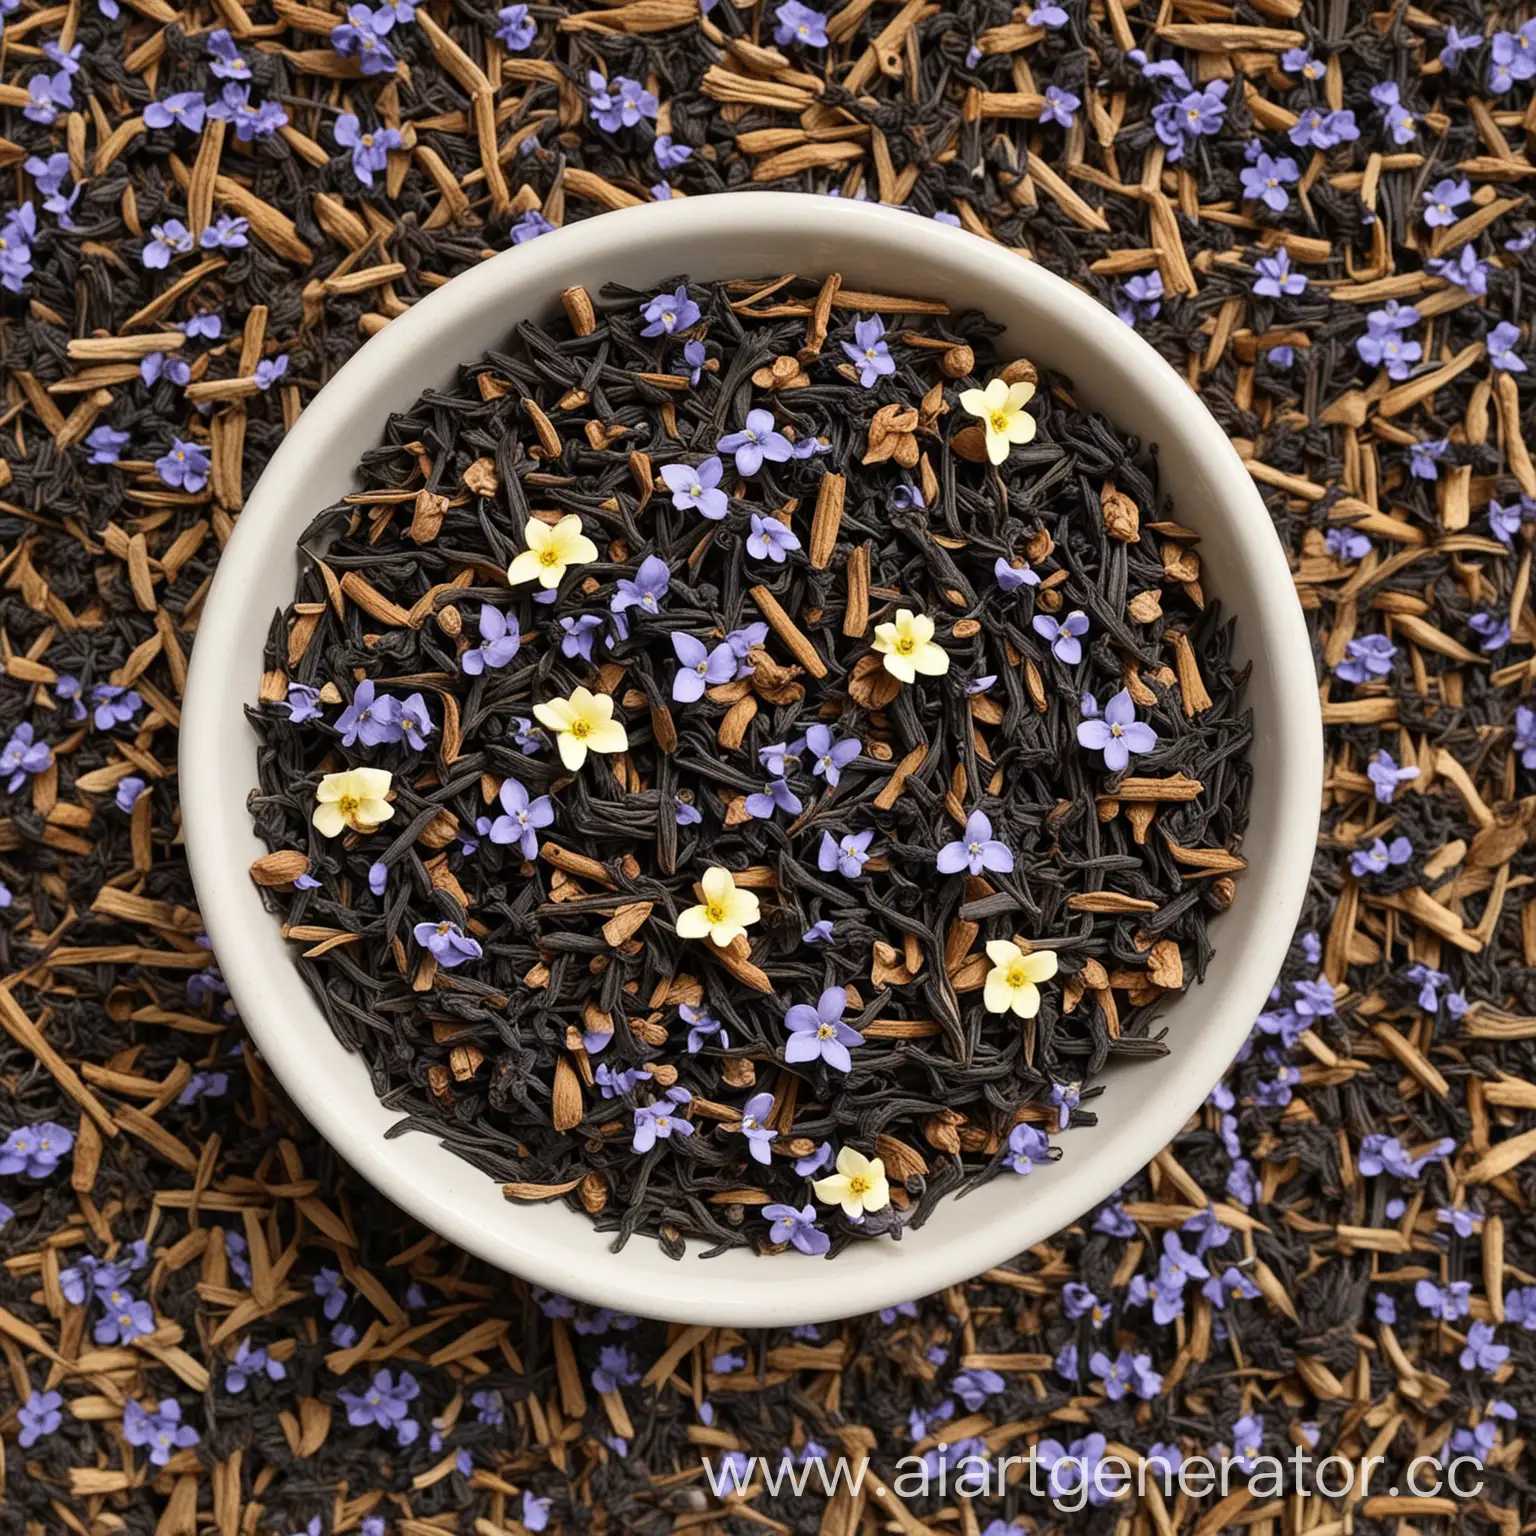 Lavender-and-Honey-Leaf-Tea-Blend-with-Assam-Black-Tea-and-Floral-Notes